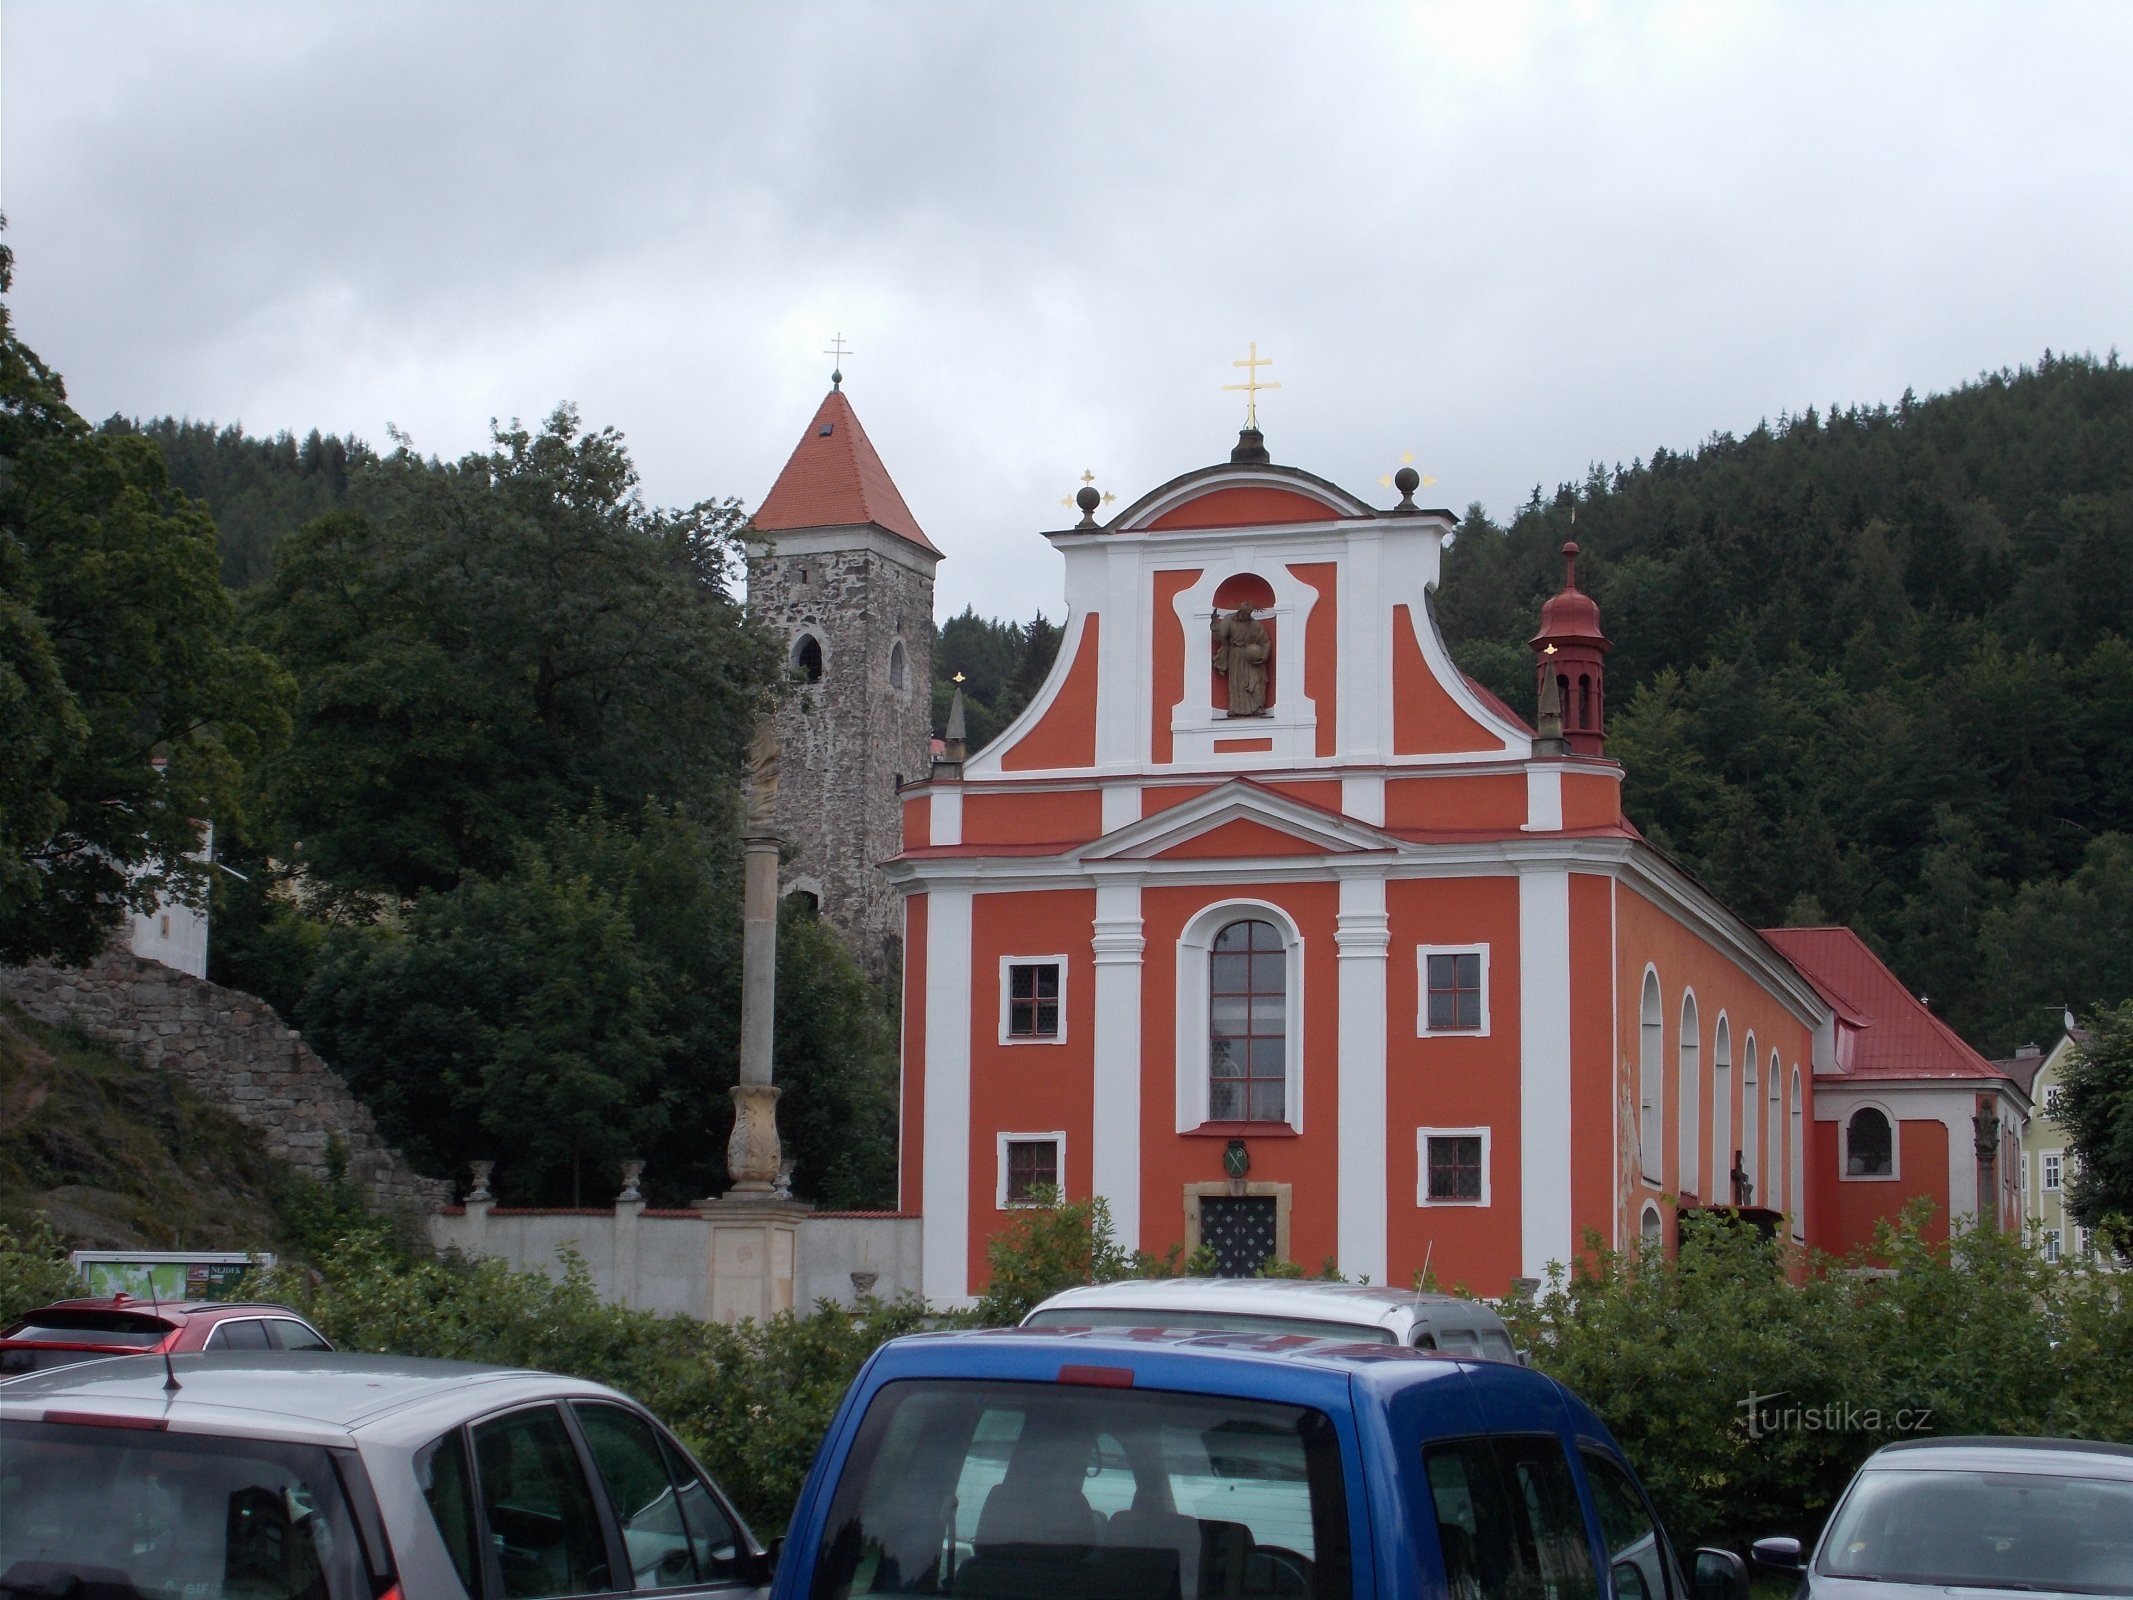 Nejdek - nhà thờ St. Martin và phần còn lại của lâu đài